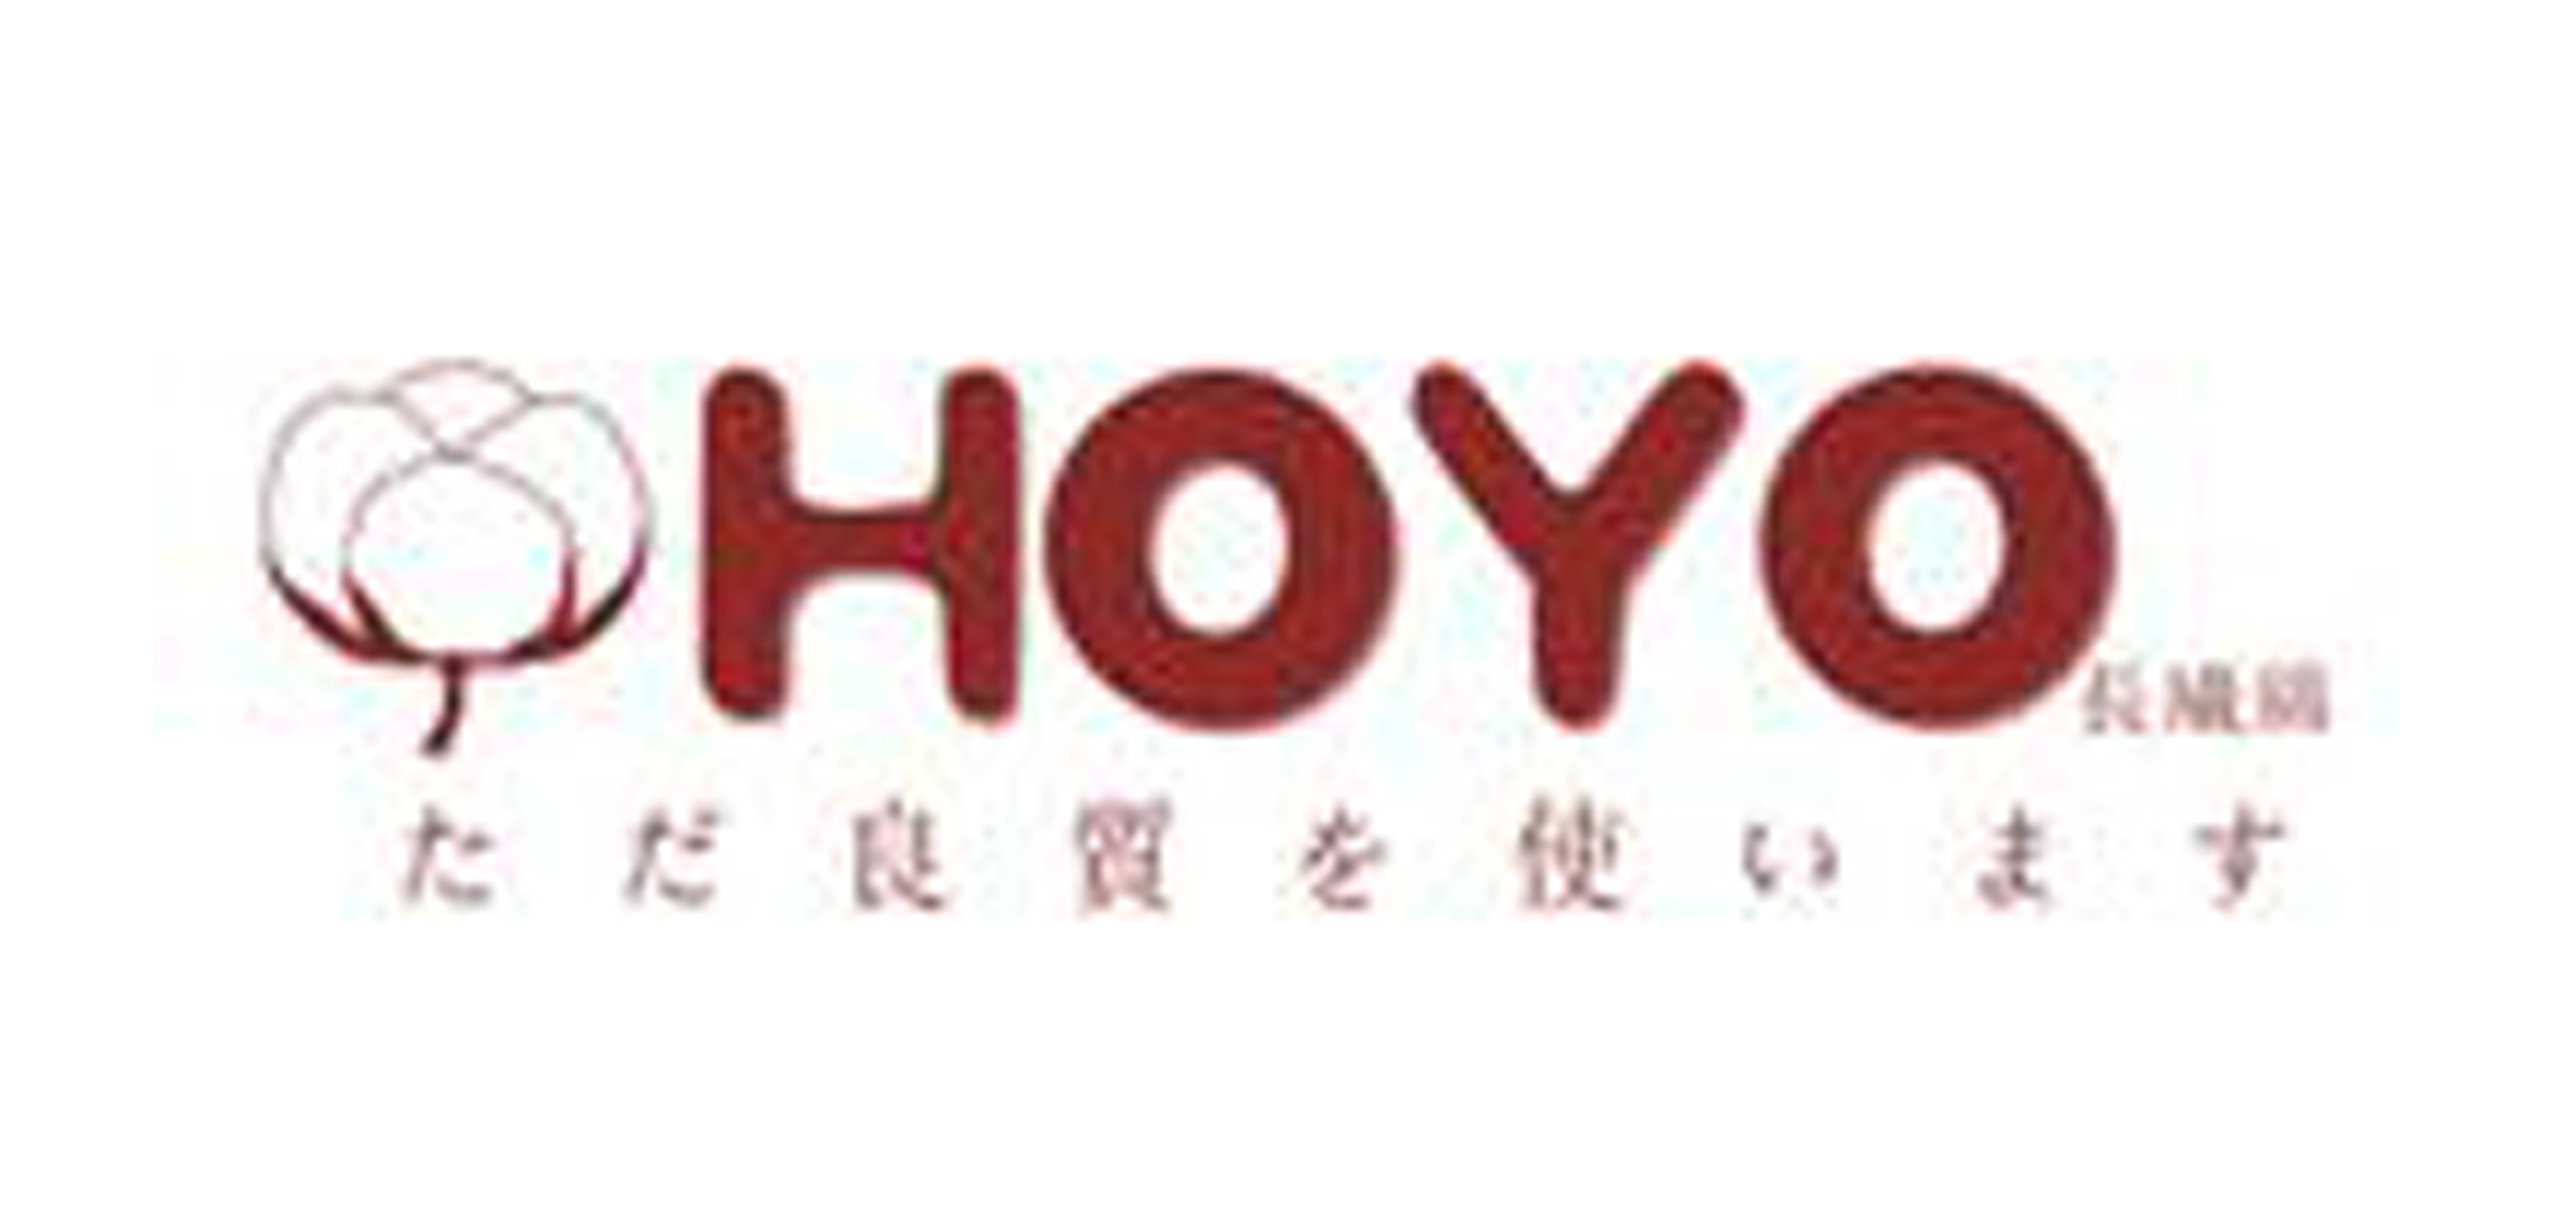 浩阳/HoYo